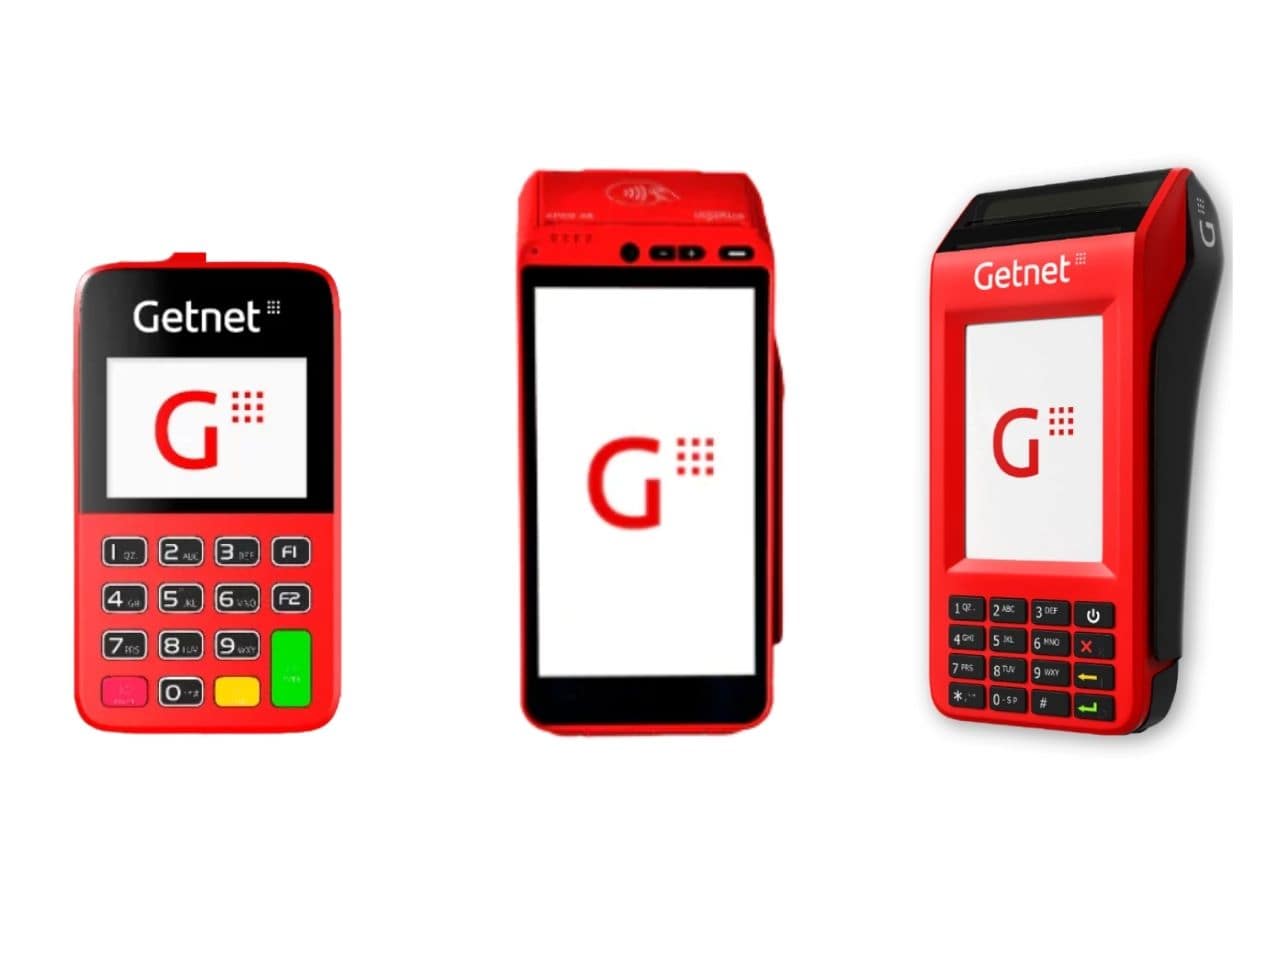 Getnet - Você sabia que a sua maquininha #Getnet pode receber